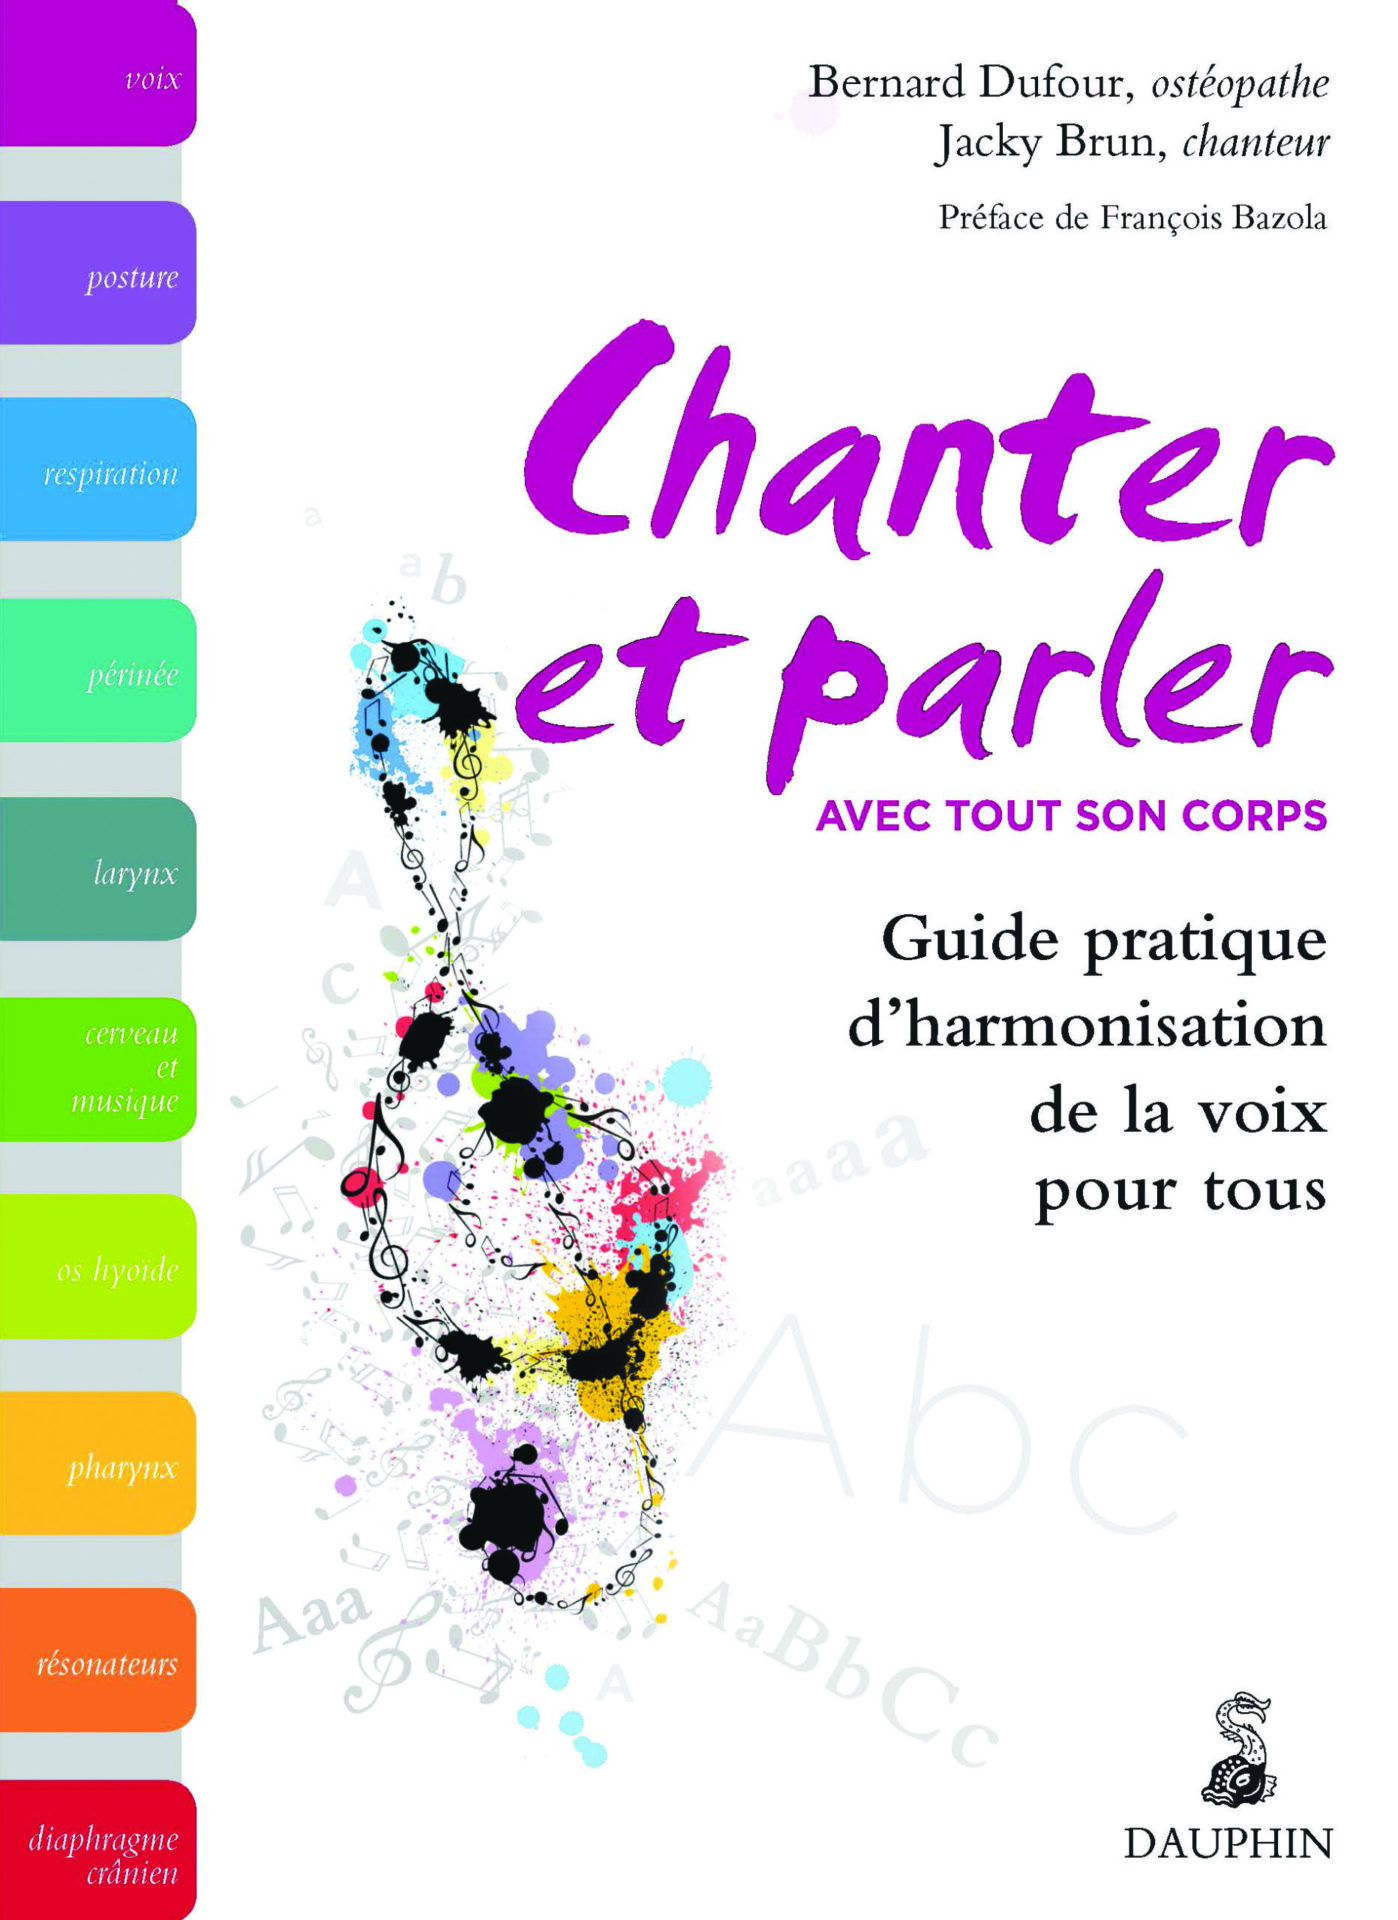 Chanter_Corps_Parler_Harmonisation_Voix_Posture